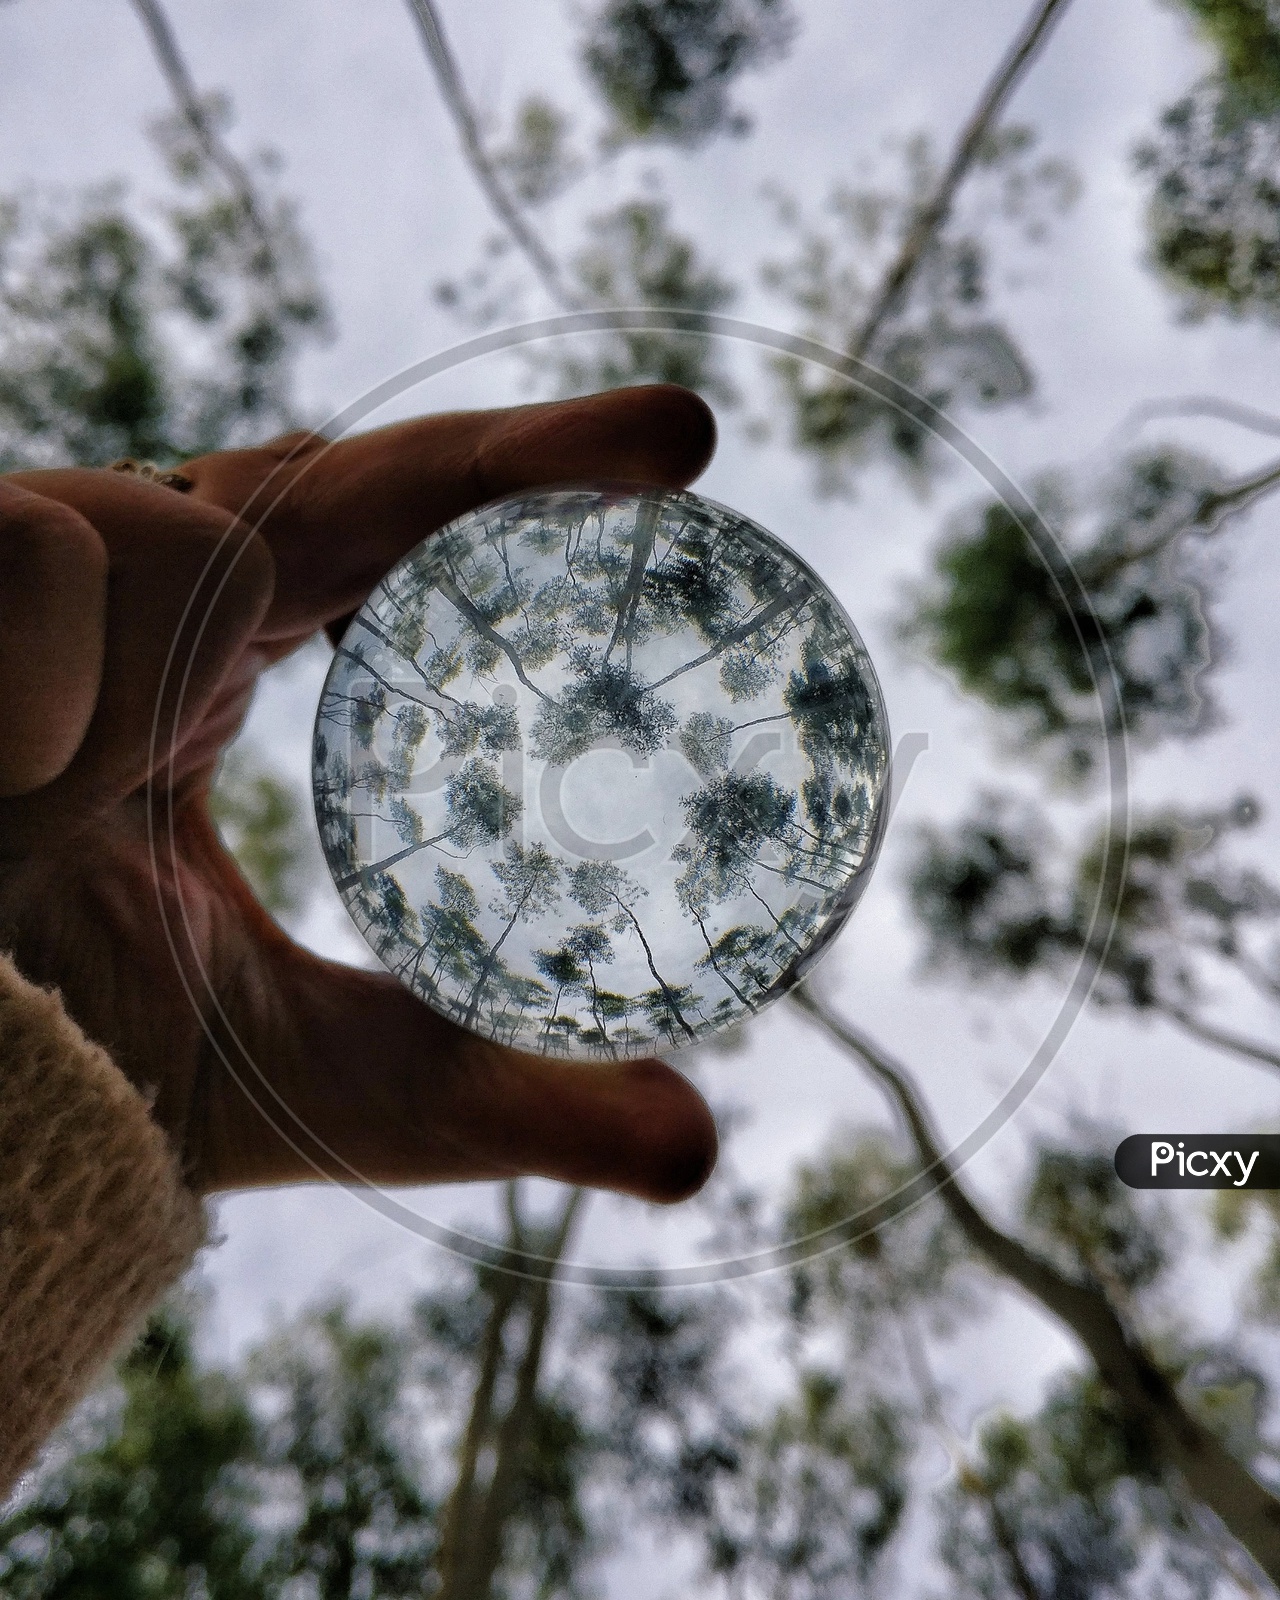 Eucalyptus Trees On a Lens Ball